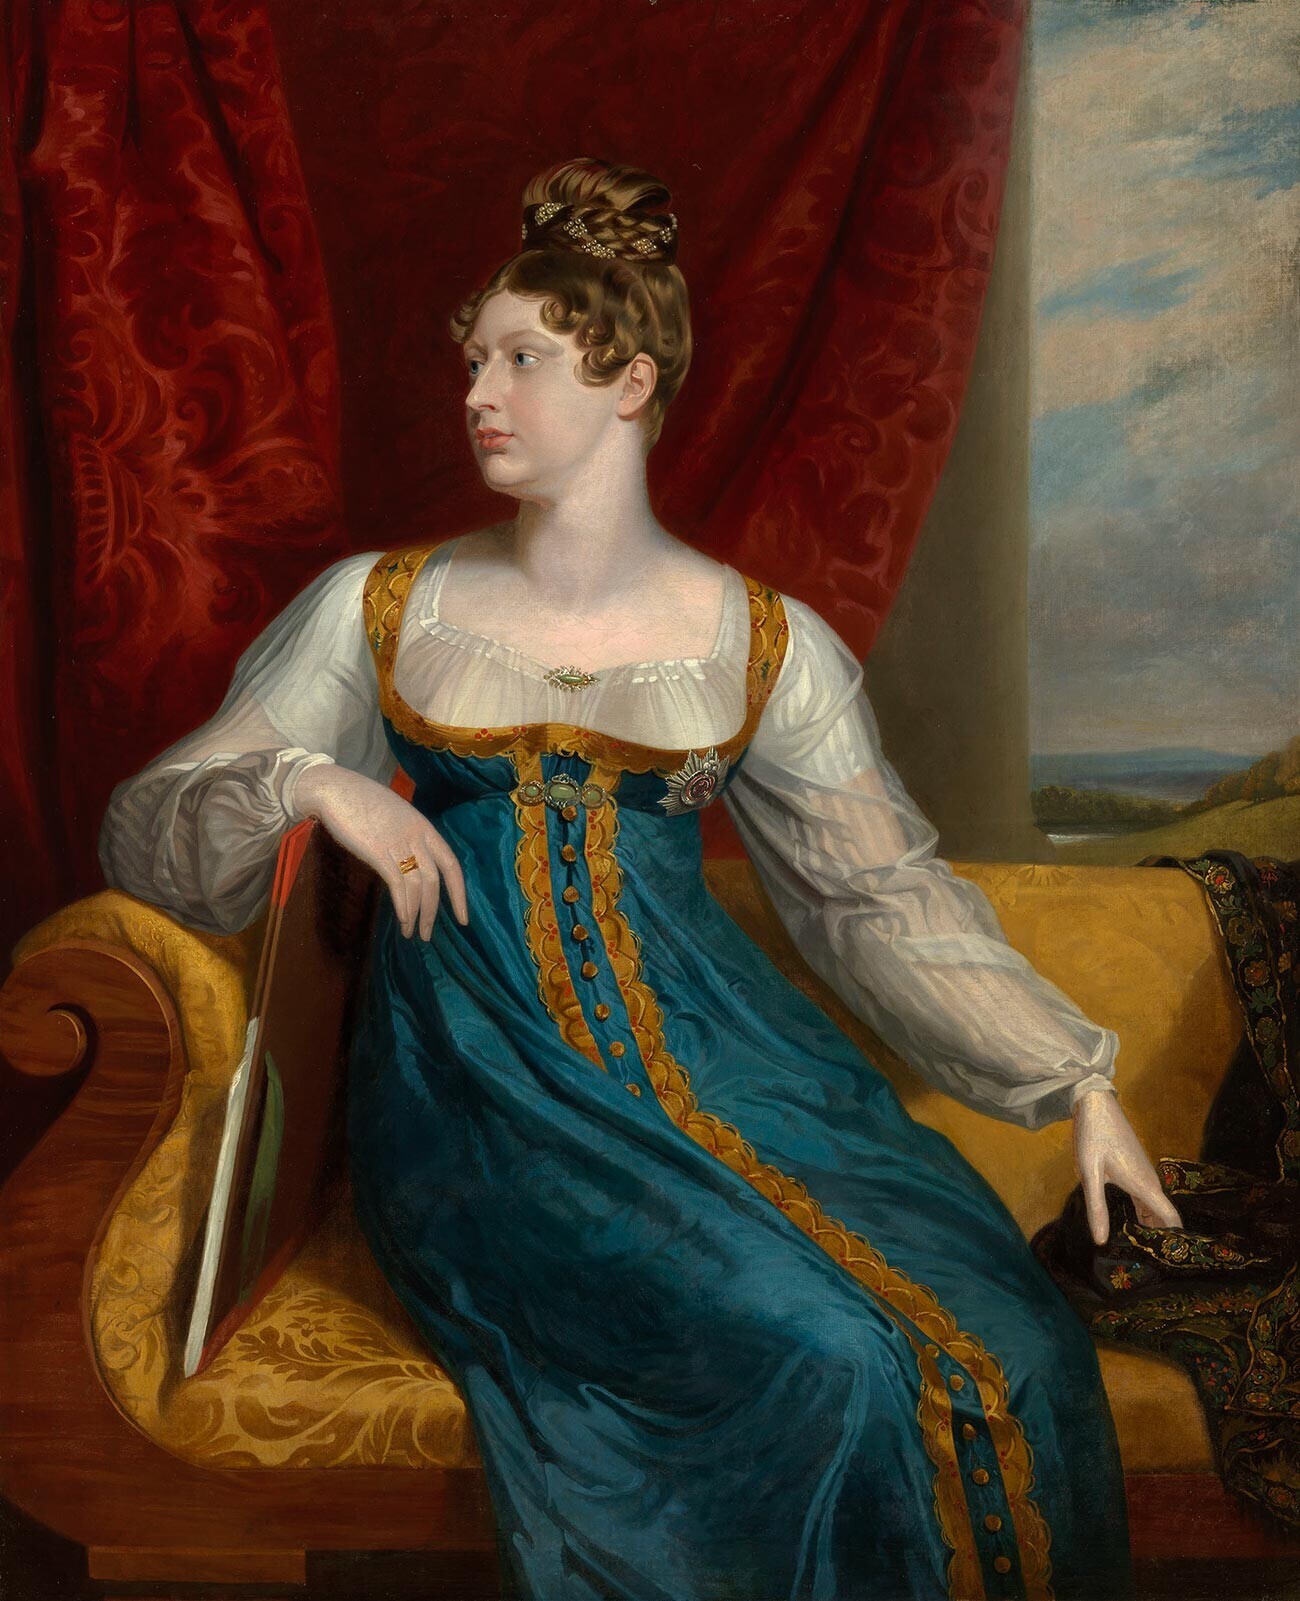  Princesa Charlotte de Gales. Este retrato é uma versão da pintura de corpo inteiro da Coleção Real Belga, datada de 1817
